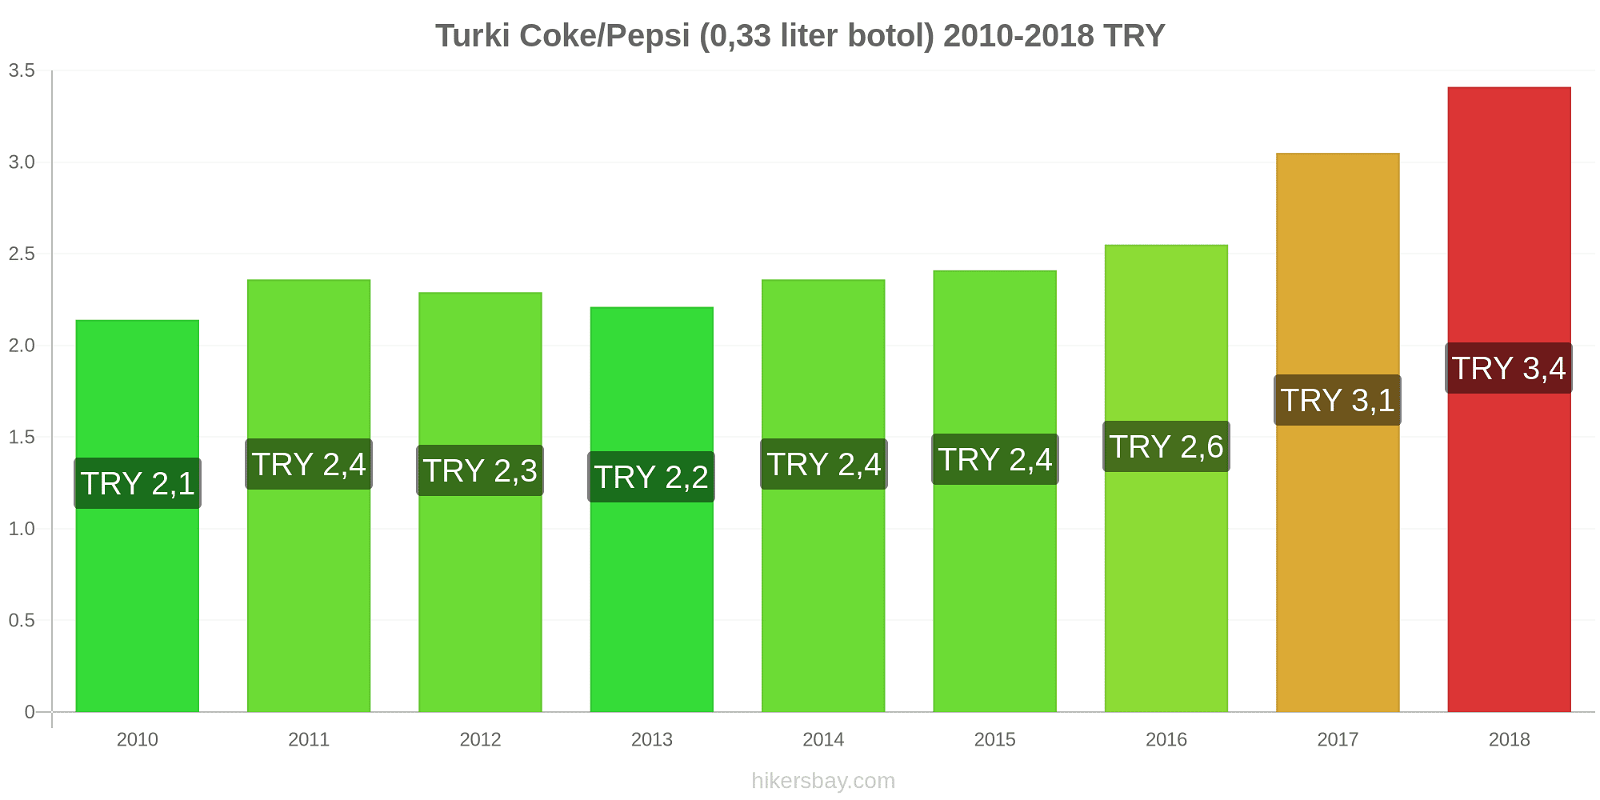 Turki perubahan harga Coca-Cola/Pepsi (botol 0.33 liter) hikersbay.com